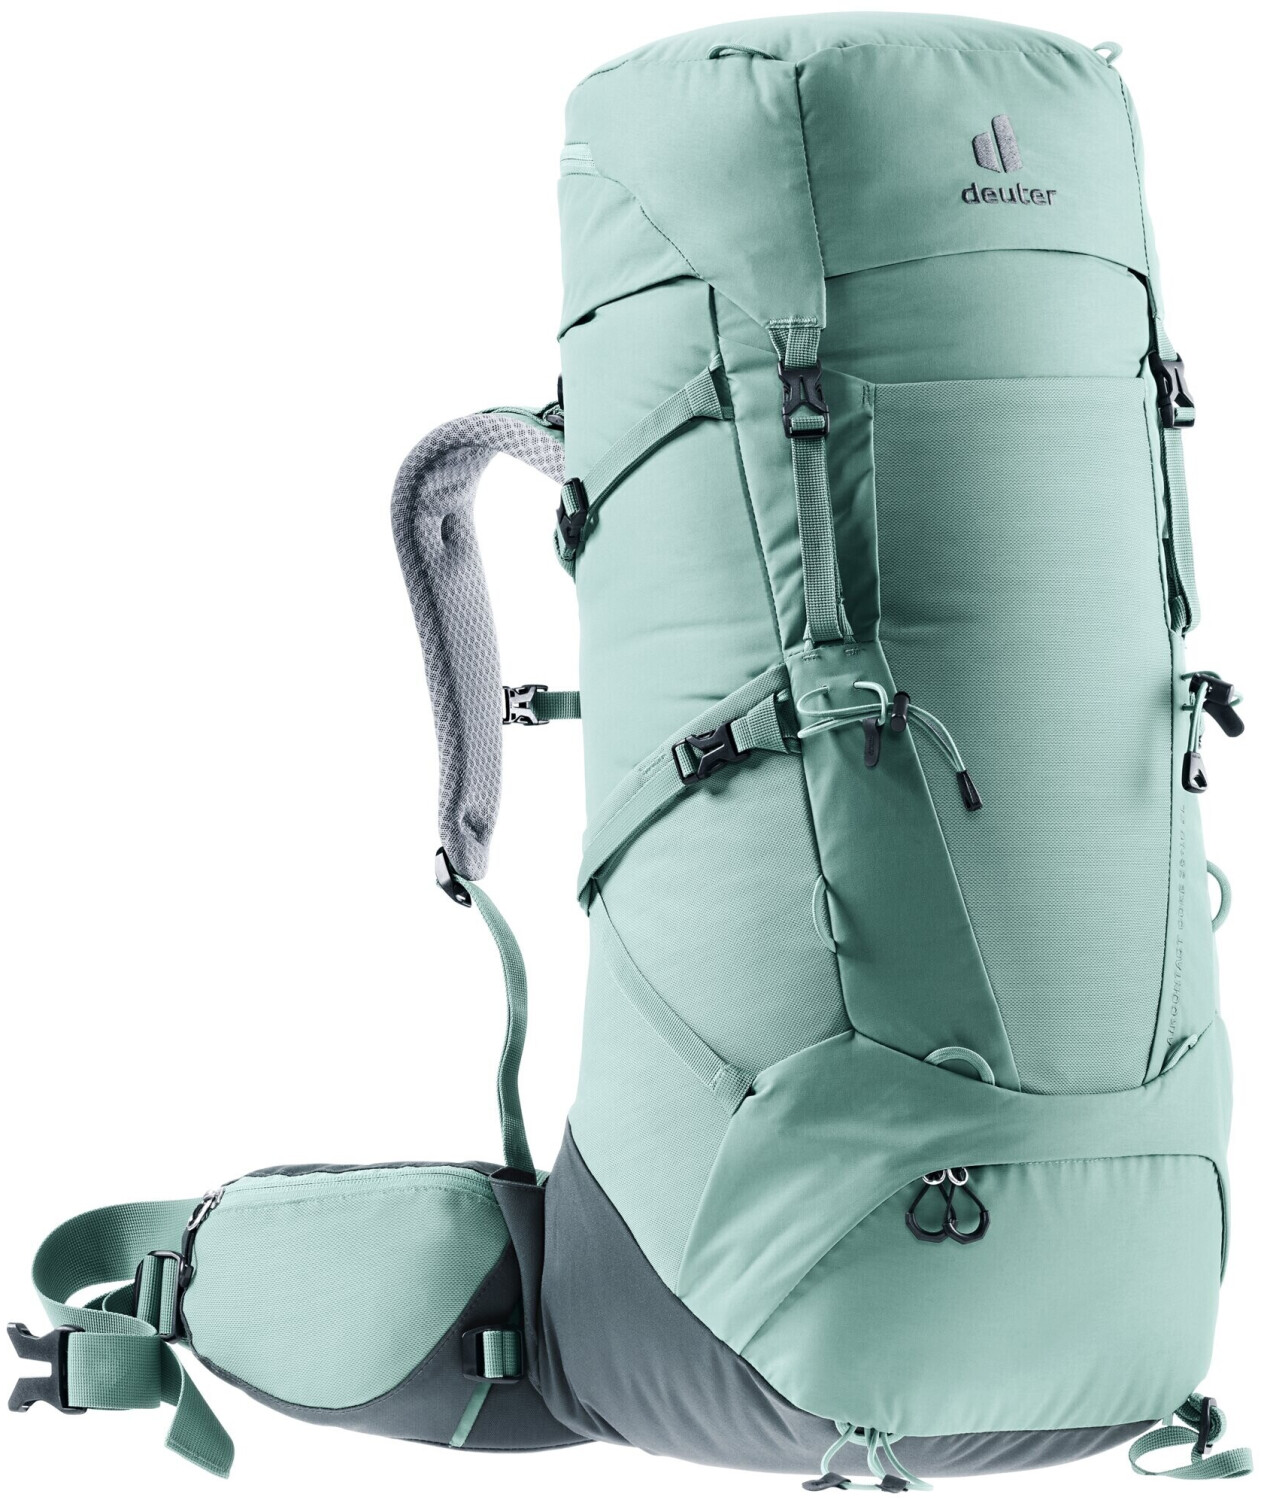 Achat Aircontact Lite SL 35+10 L sac à dos de randonnée femmes